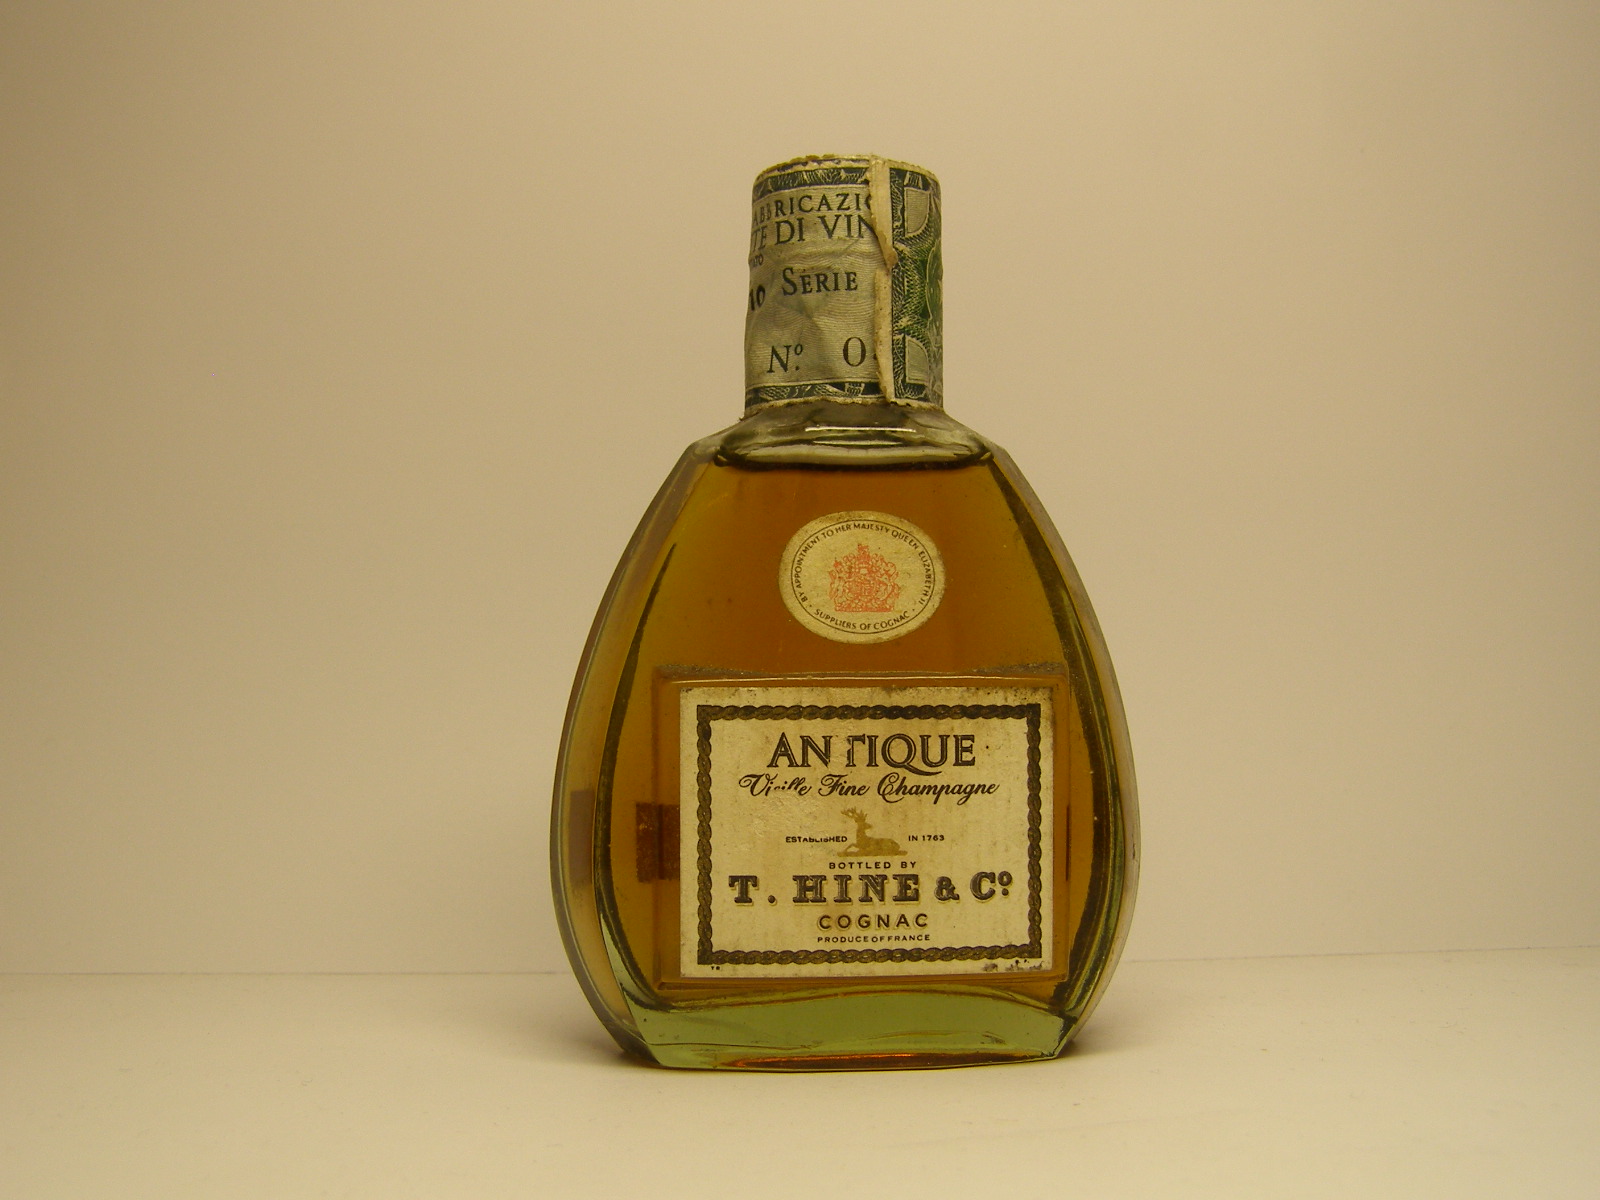 ANTIQUE Vielle Fine Champagne Cognac